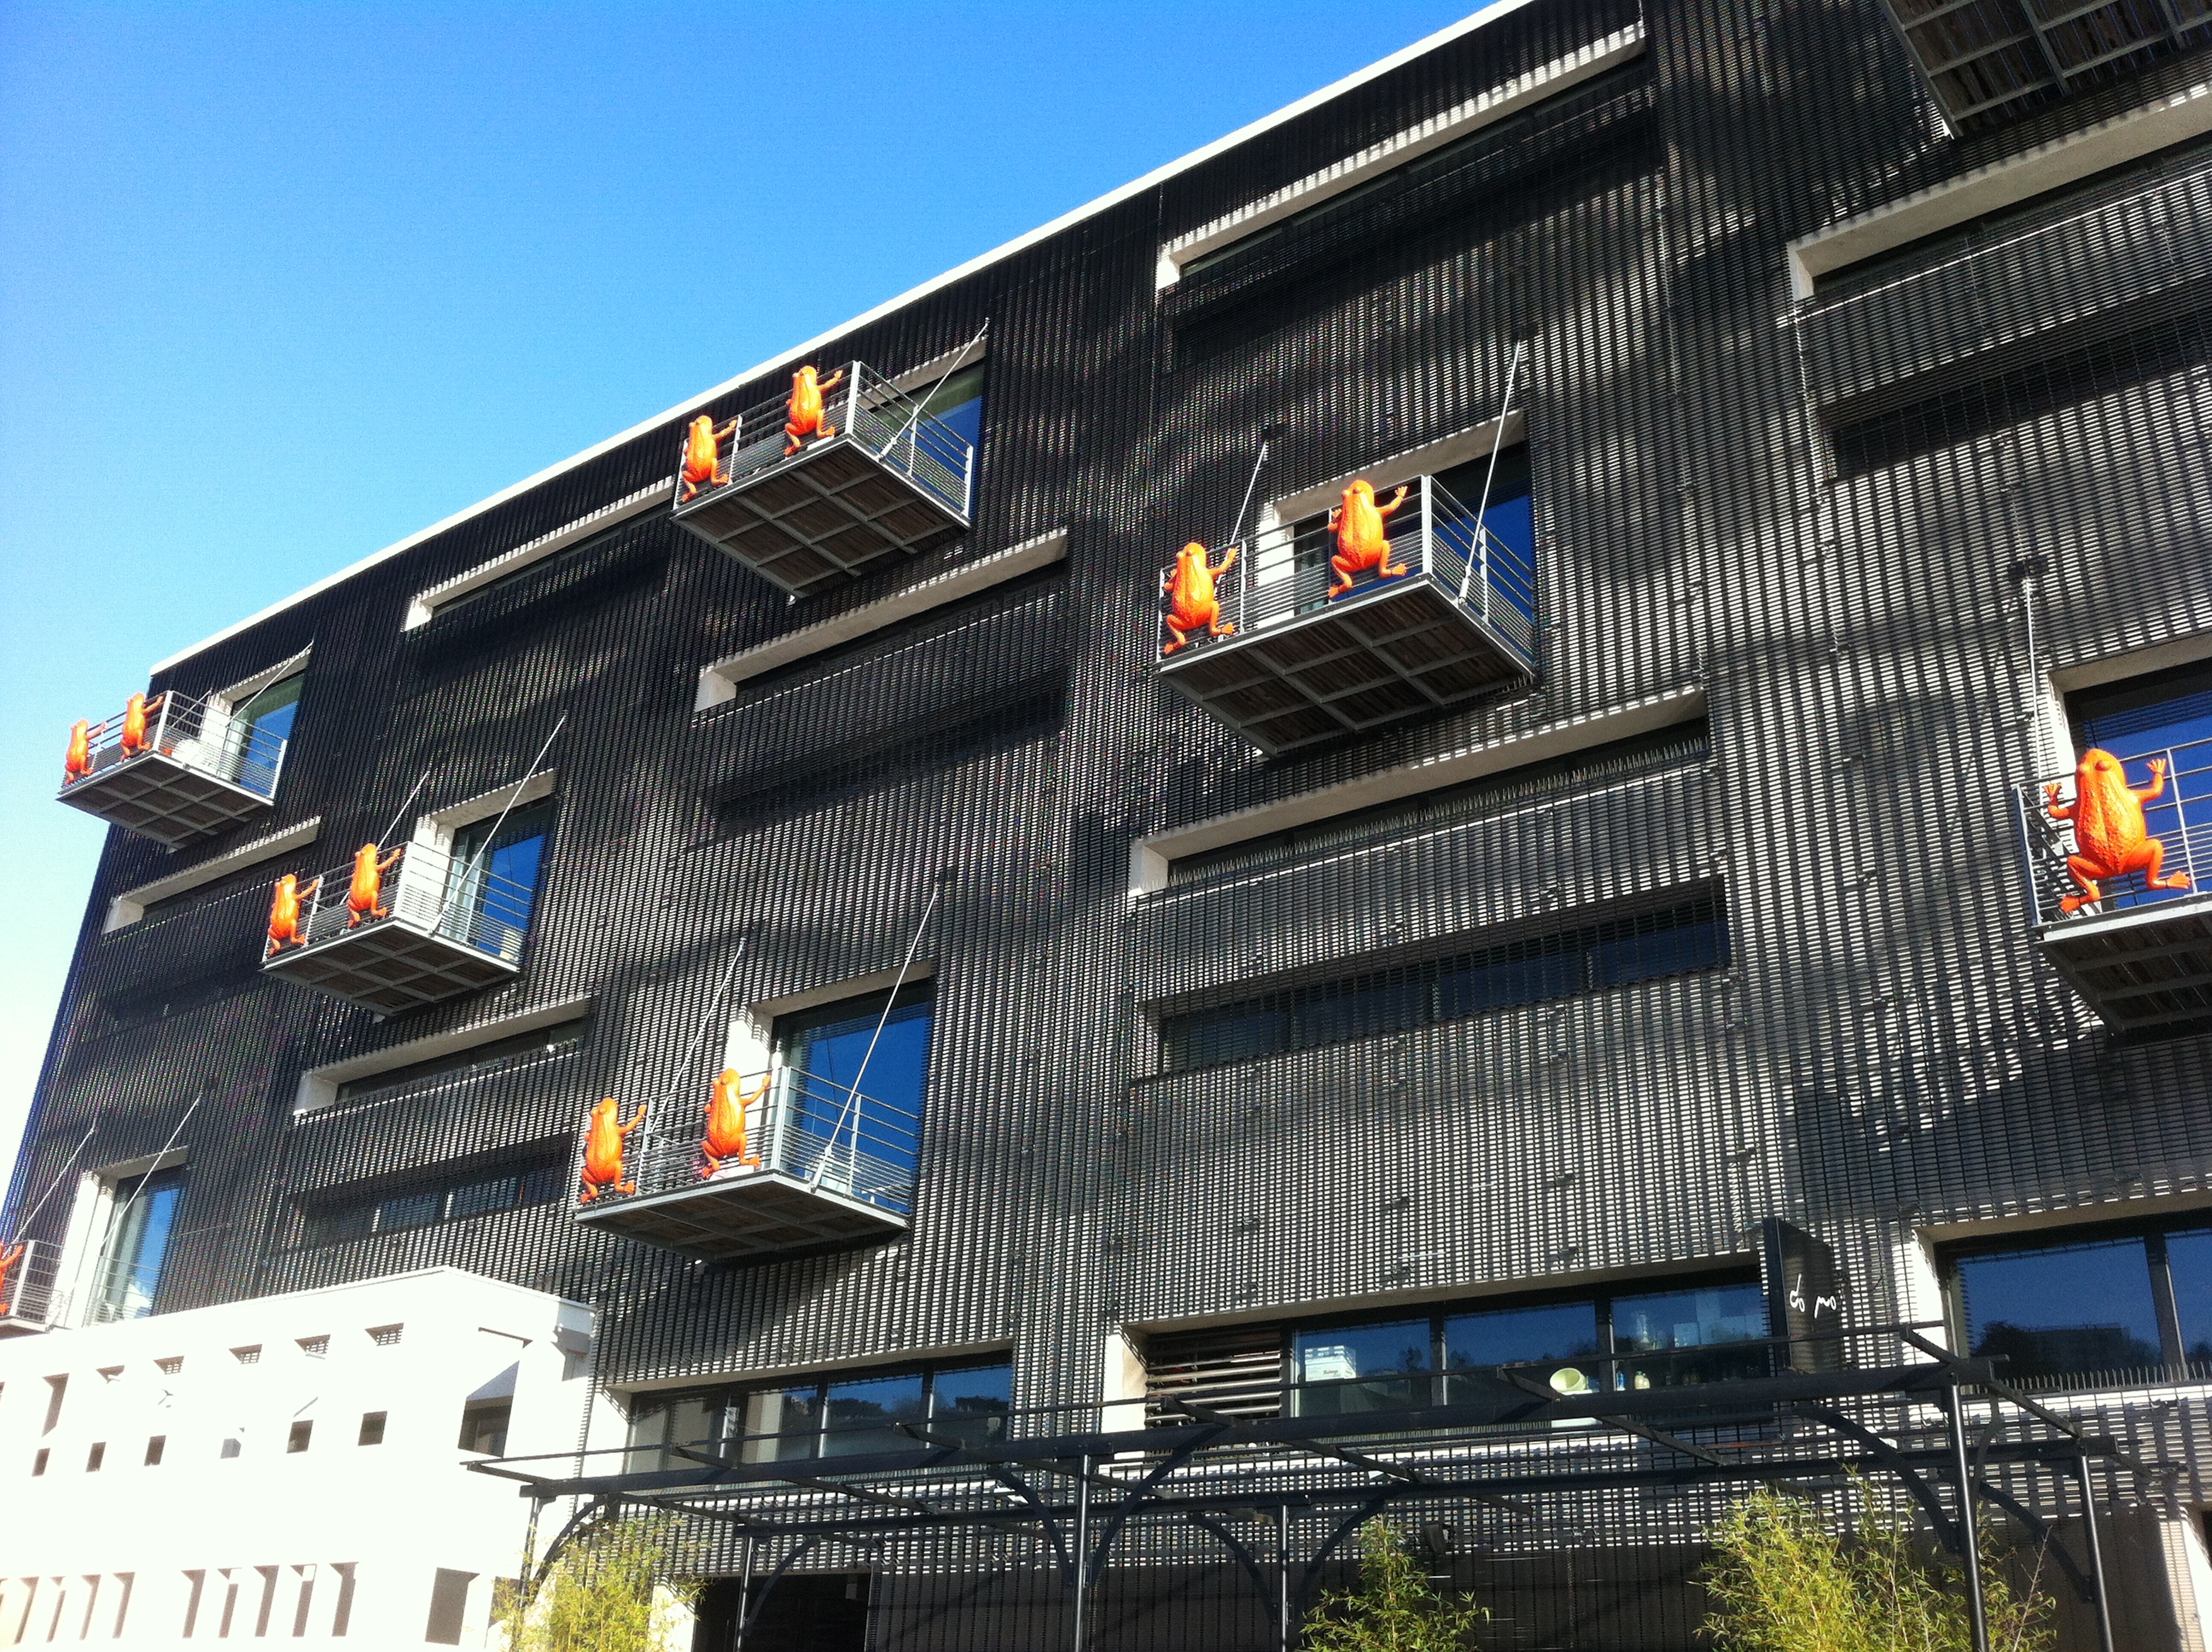 Grenouilles rouges sur balcon #lyon #confluence #architecture 